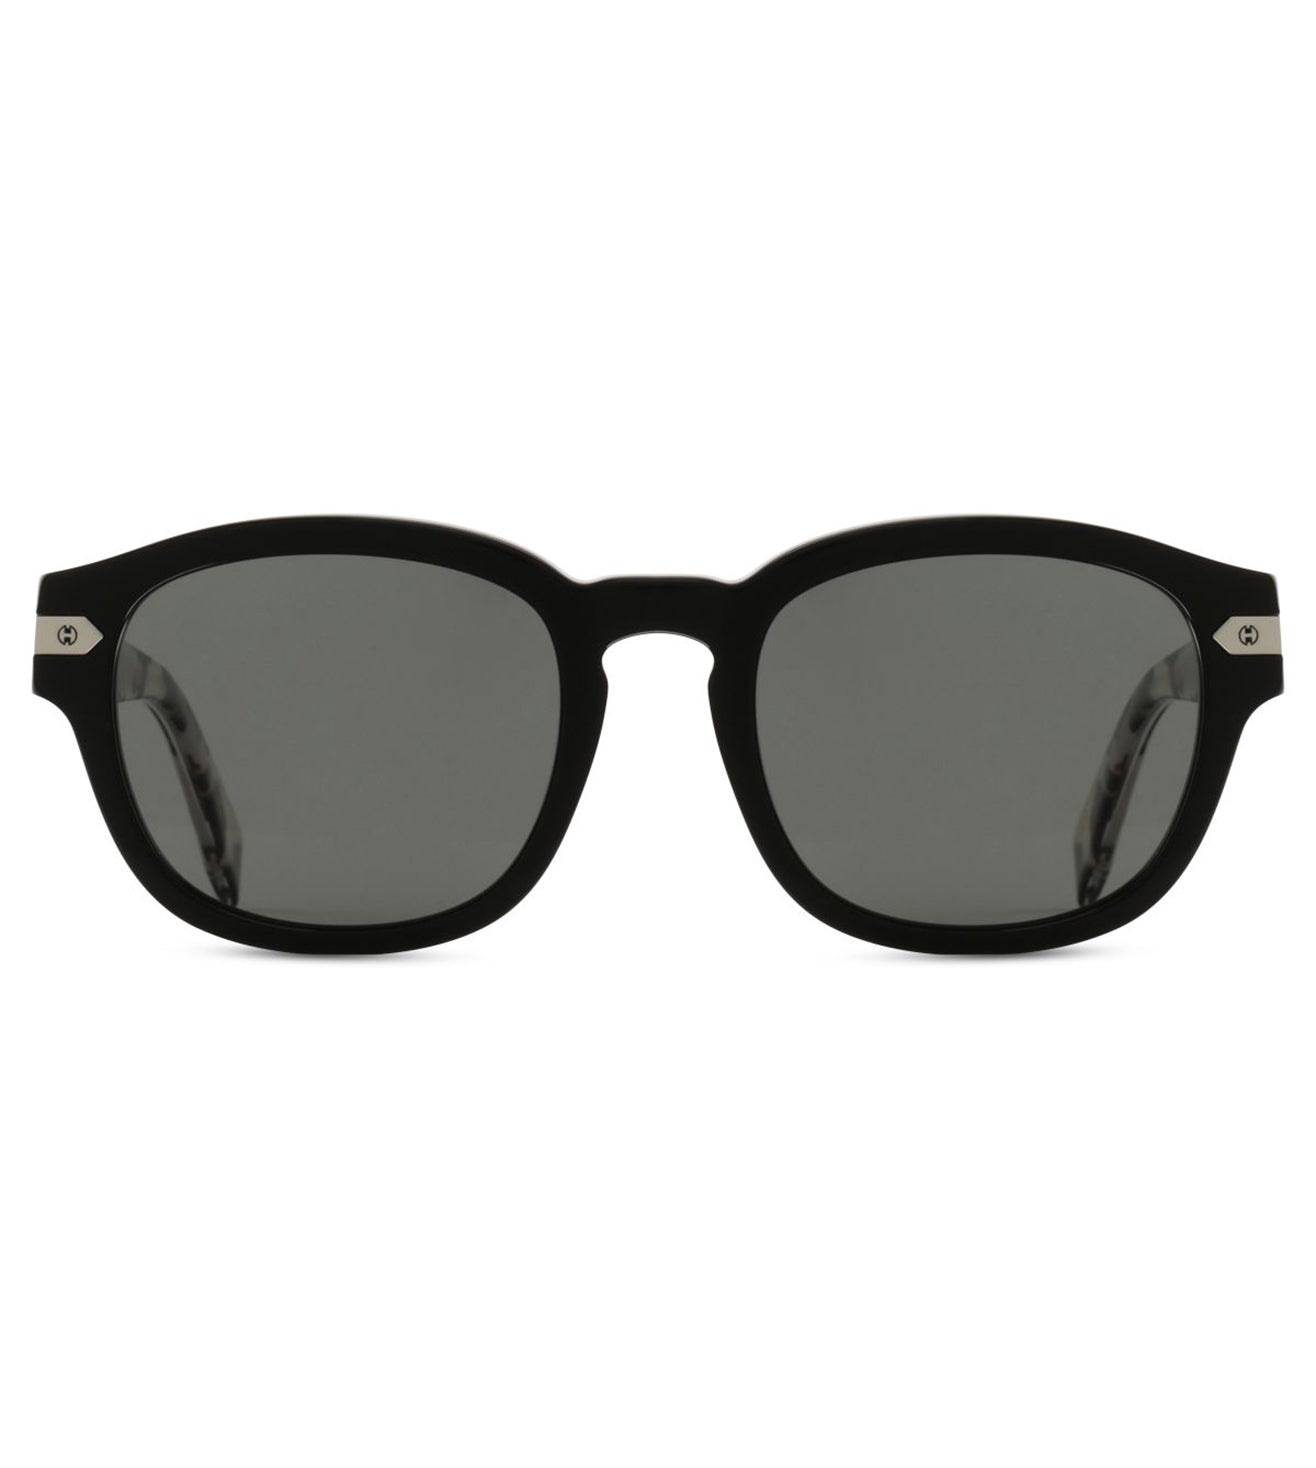 Hublot Unisex Grey Square Sunglasses